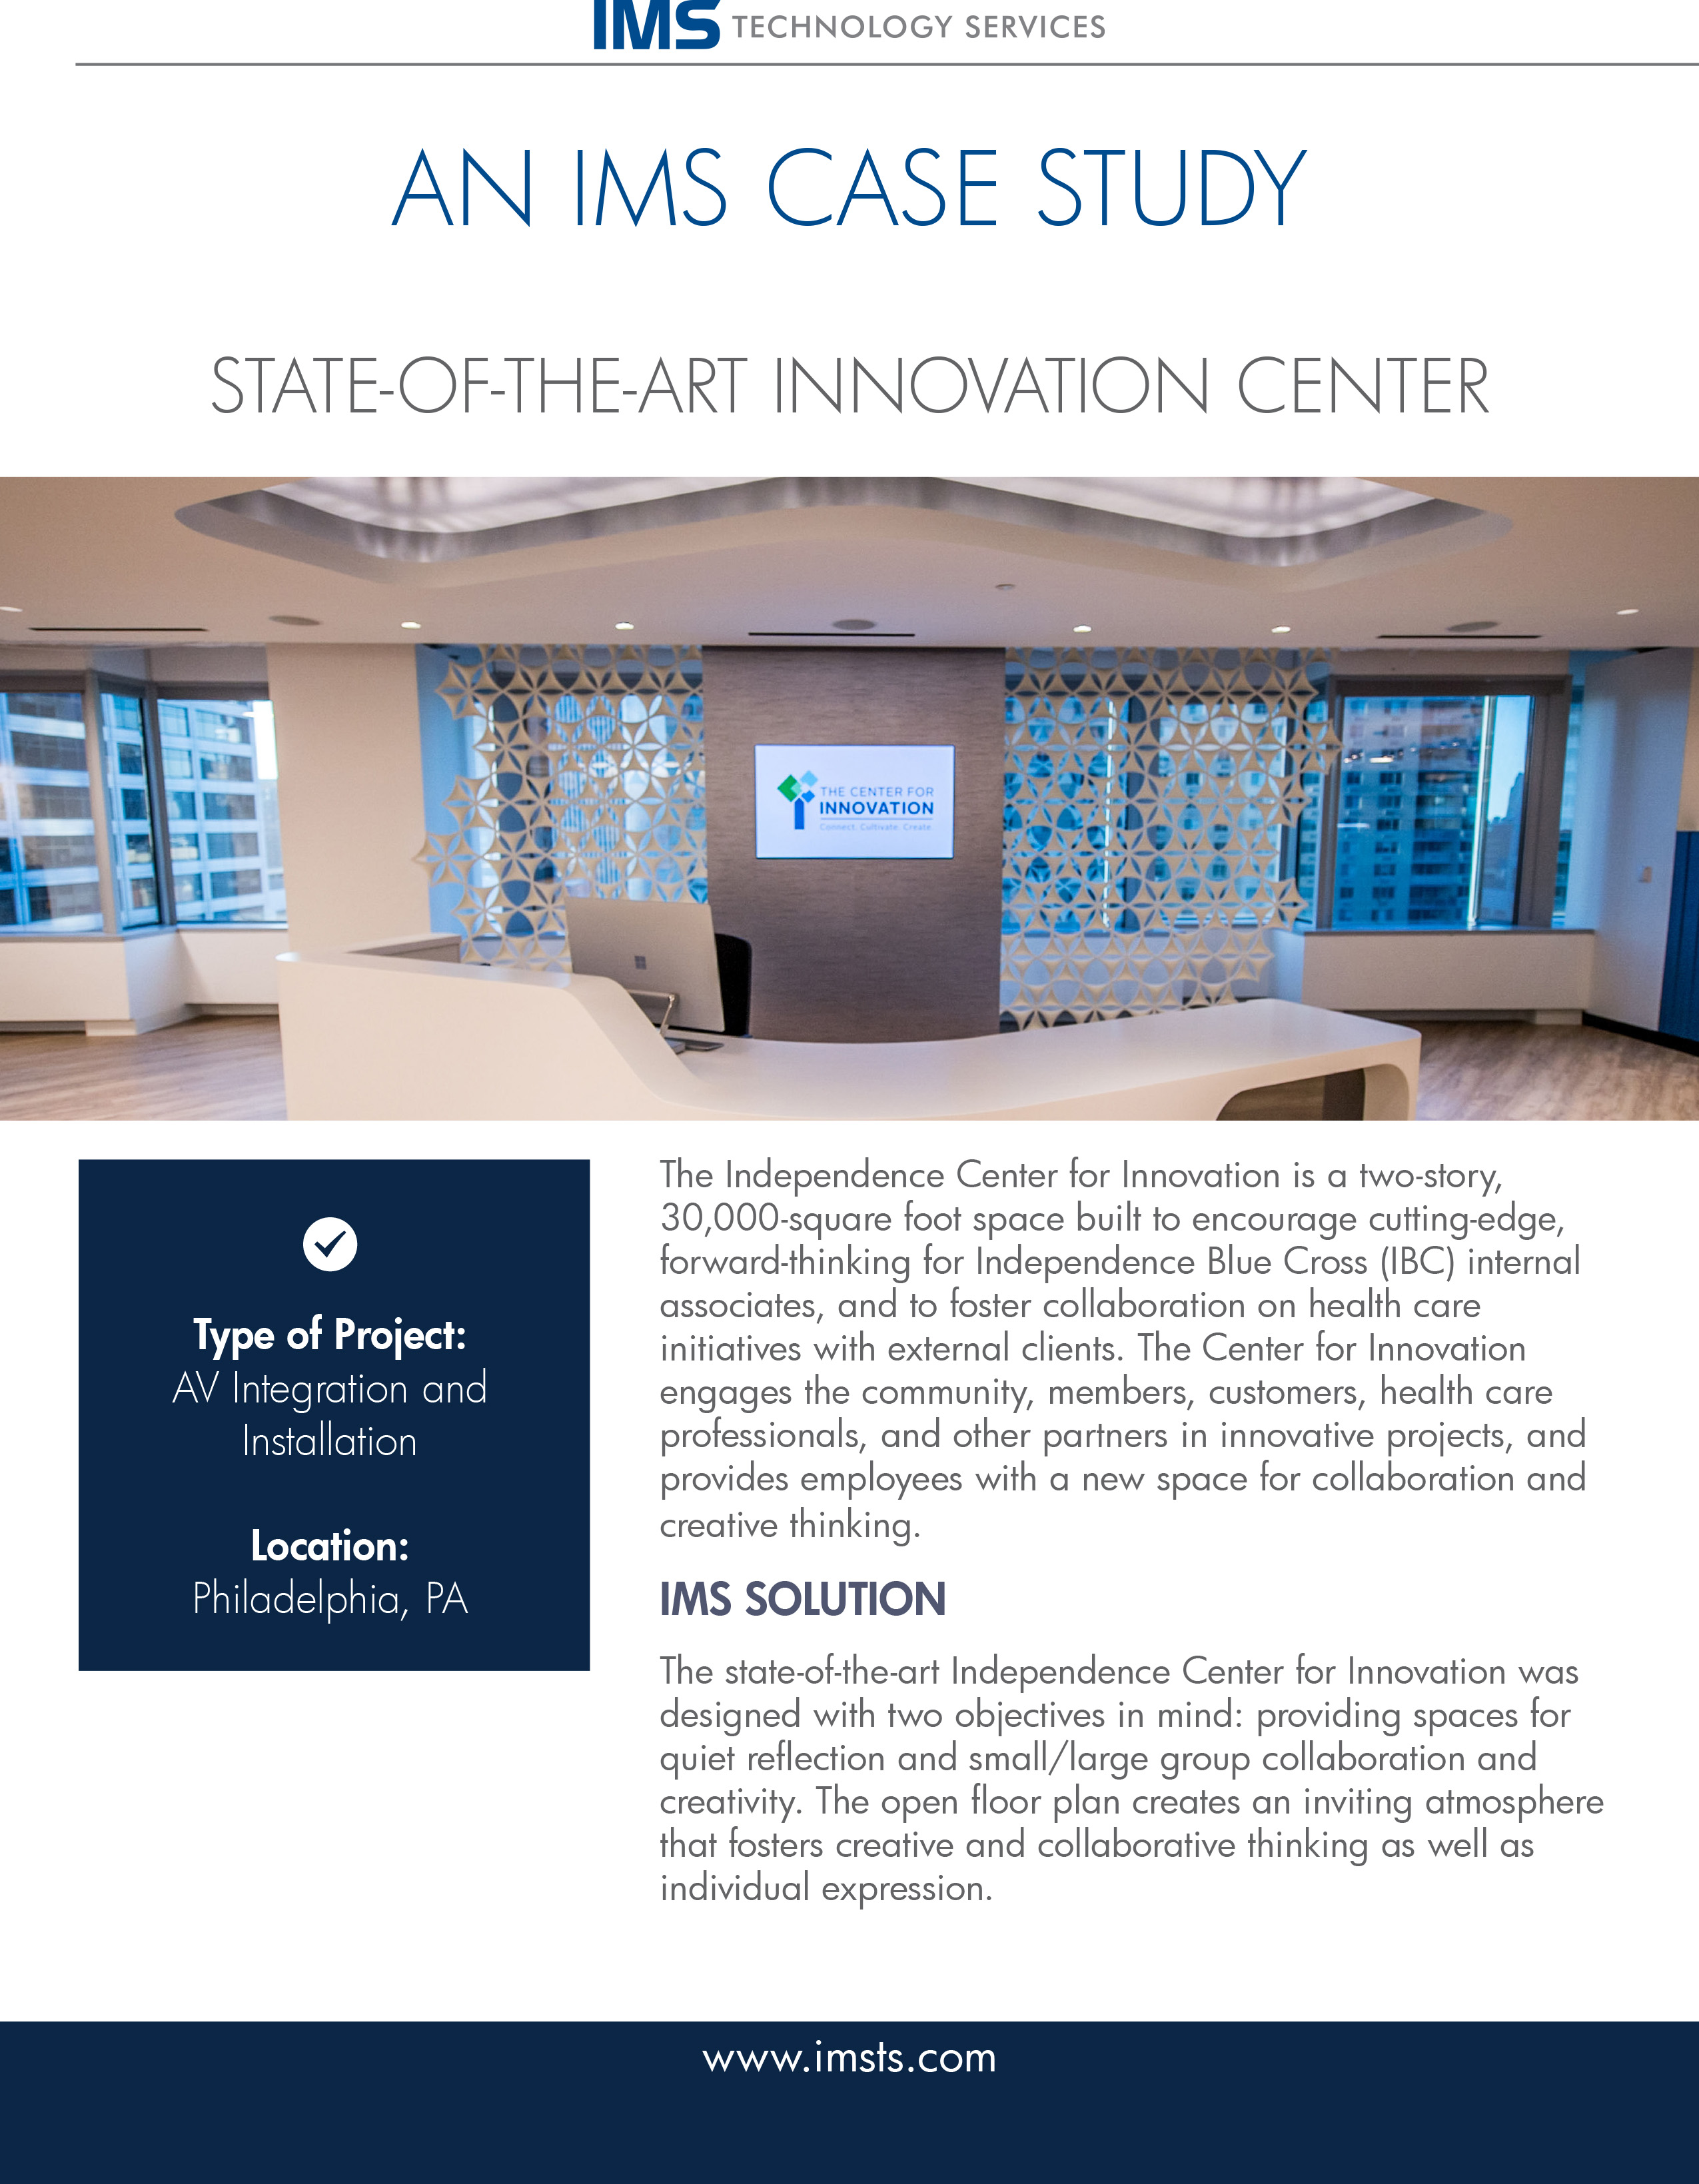 AV and systems integration for innovation center in Philadelphia, PA